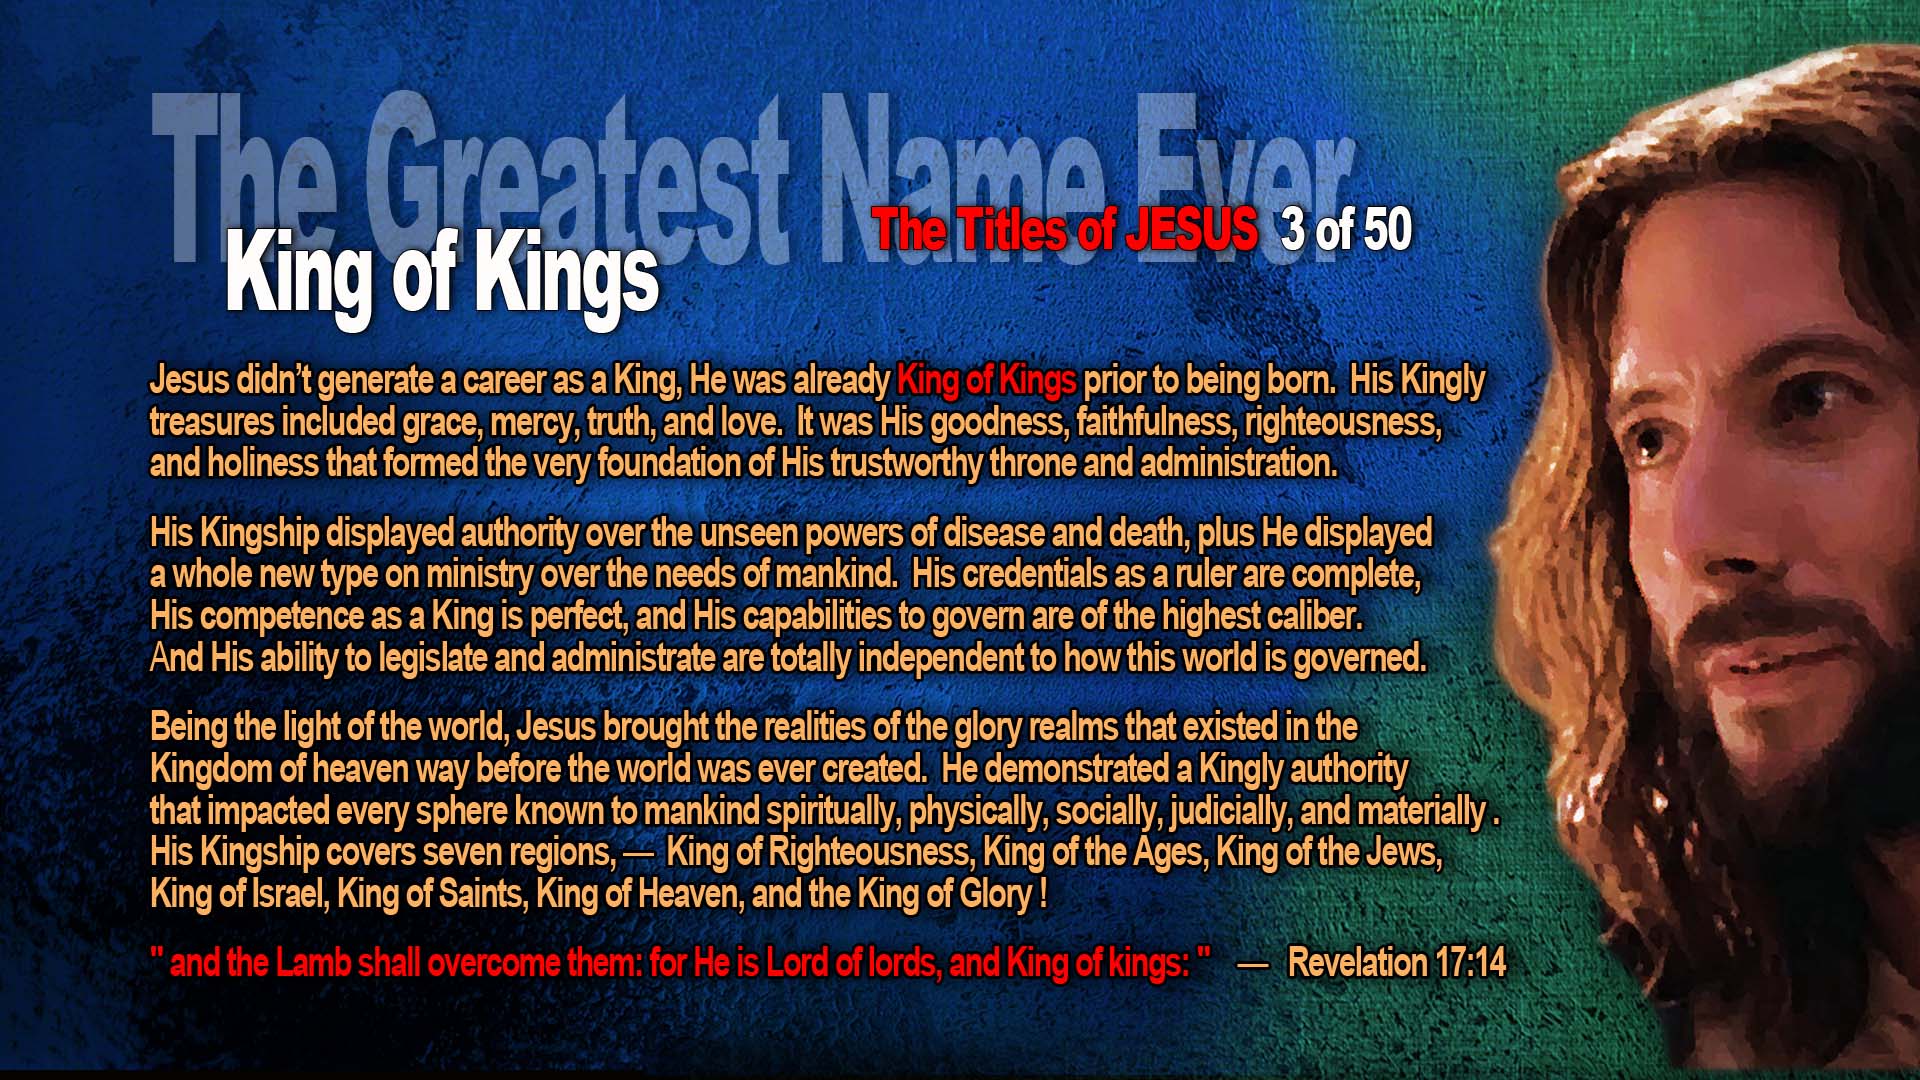 GreatestName King